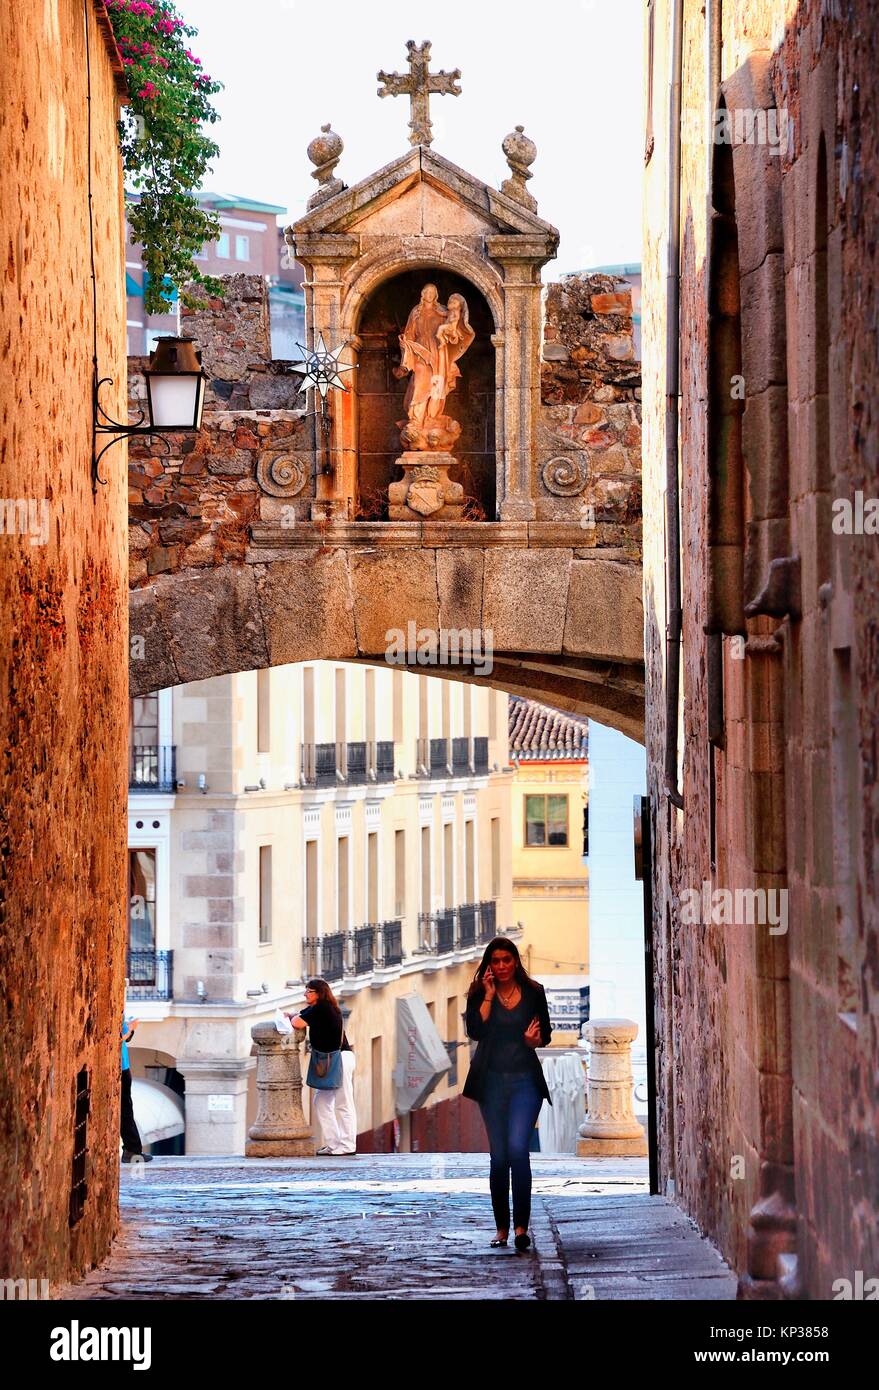 Arco de la estrella - Arco de la estrella, la entrada a la ciudad vieja de Cáceres, Patrimonio Mundial de la UNESCO, Extremadura, España, Europa Foto de stock